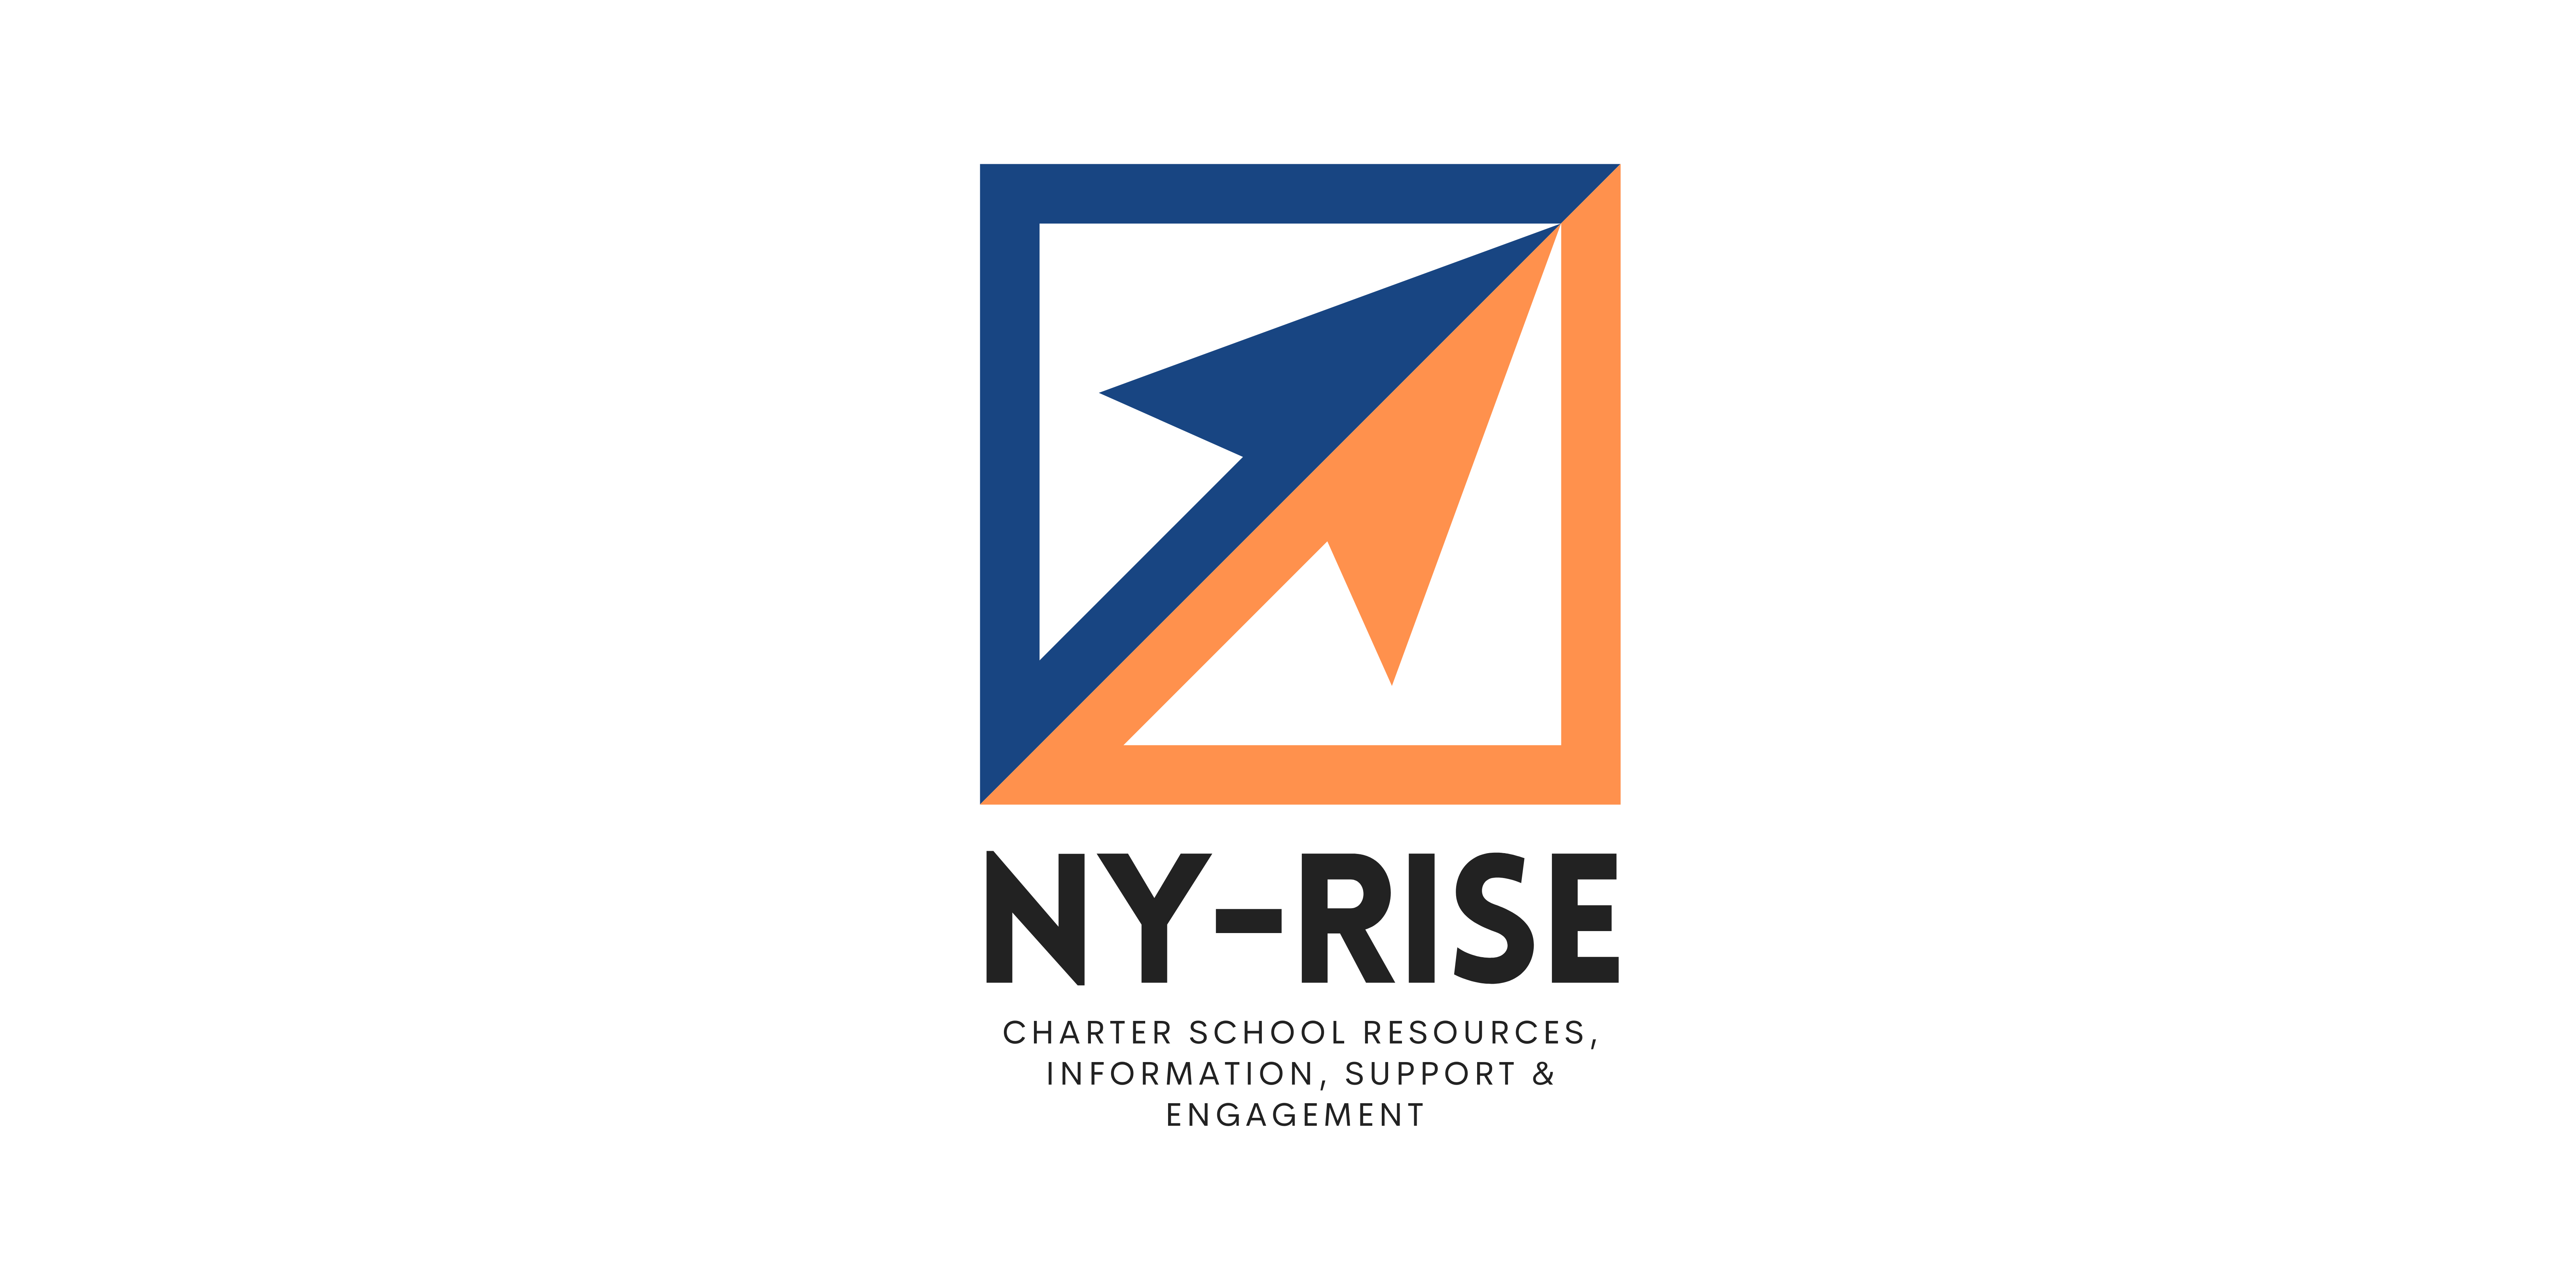 Logo for New York Rise